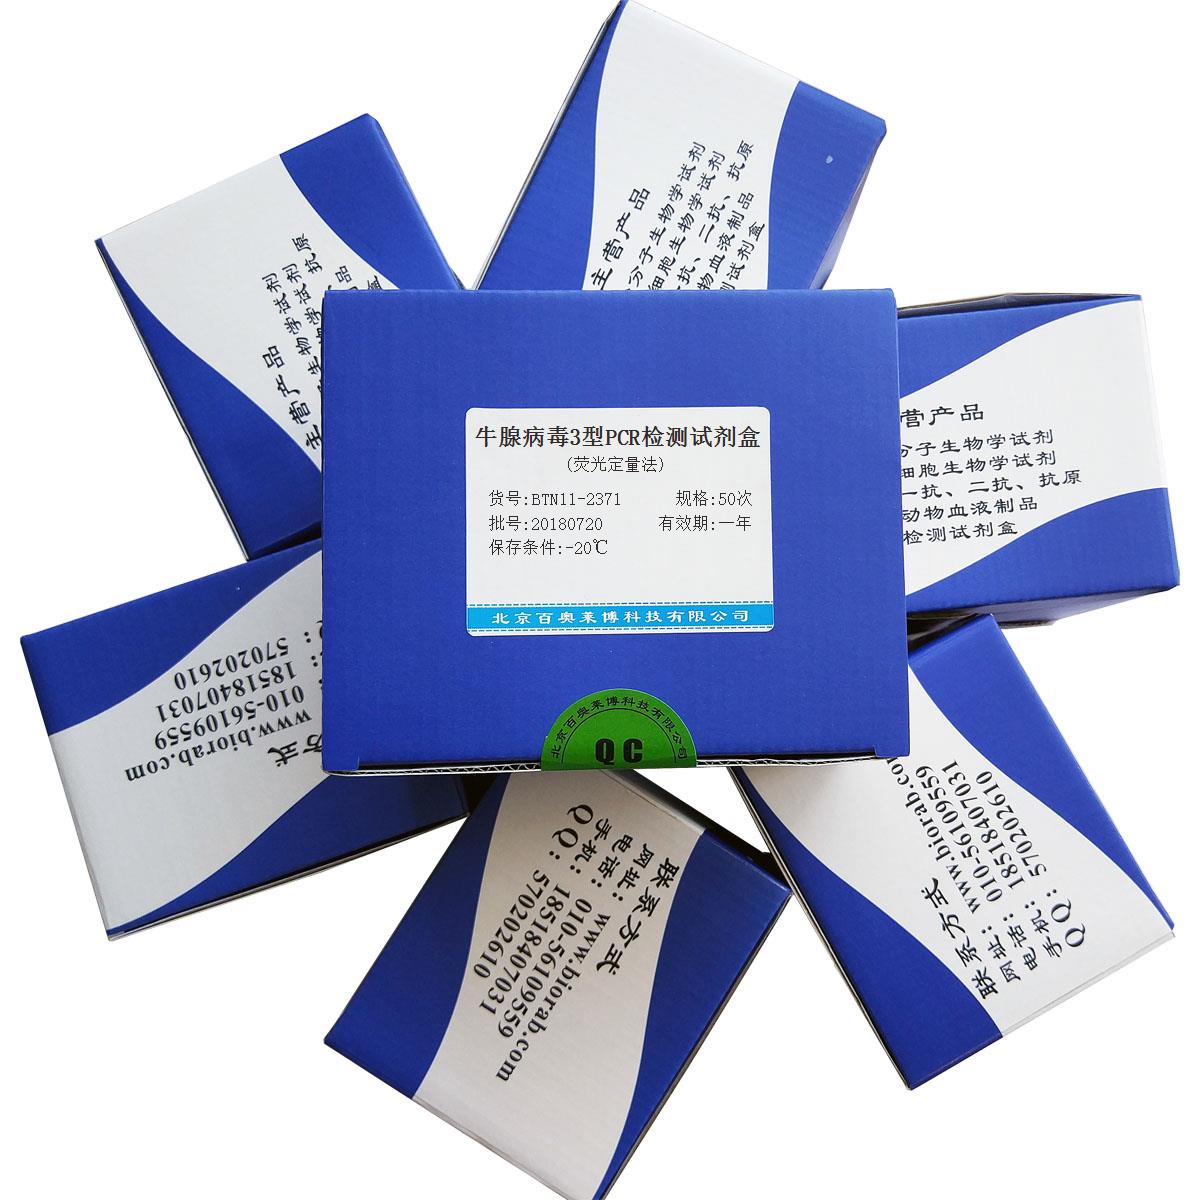 牛腺病毒3型PCR检测试剂盒(荧光定量法)